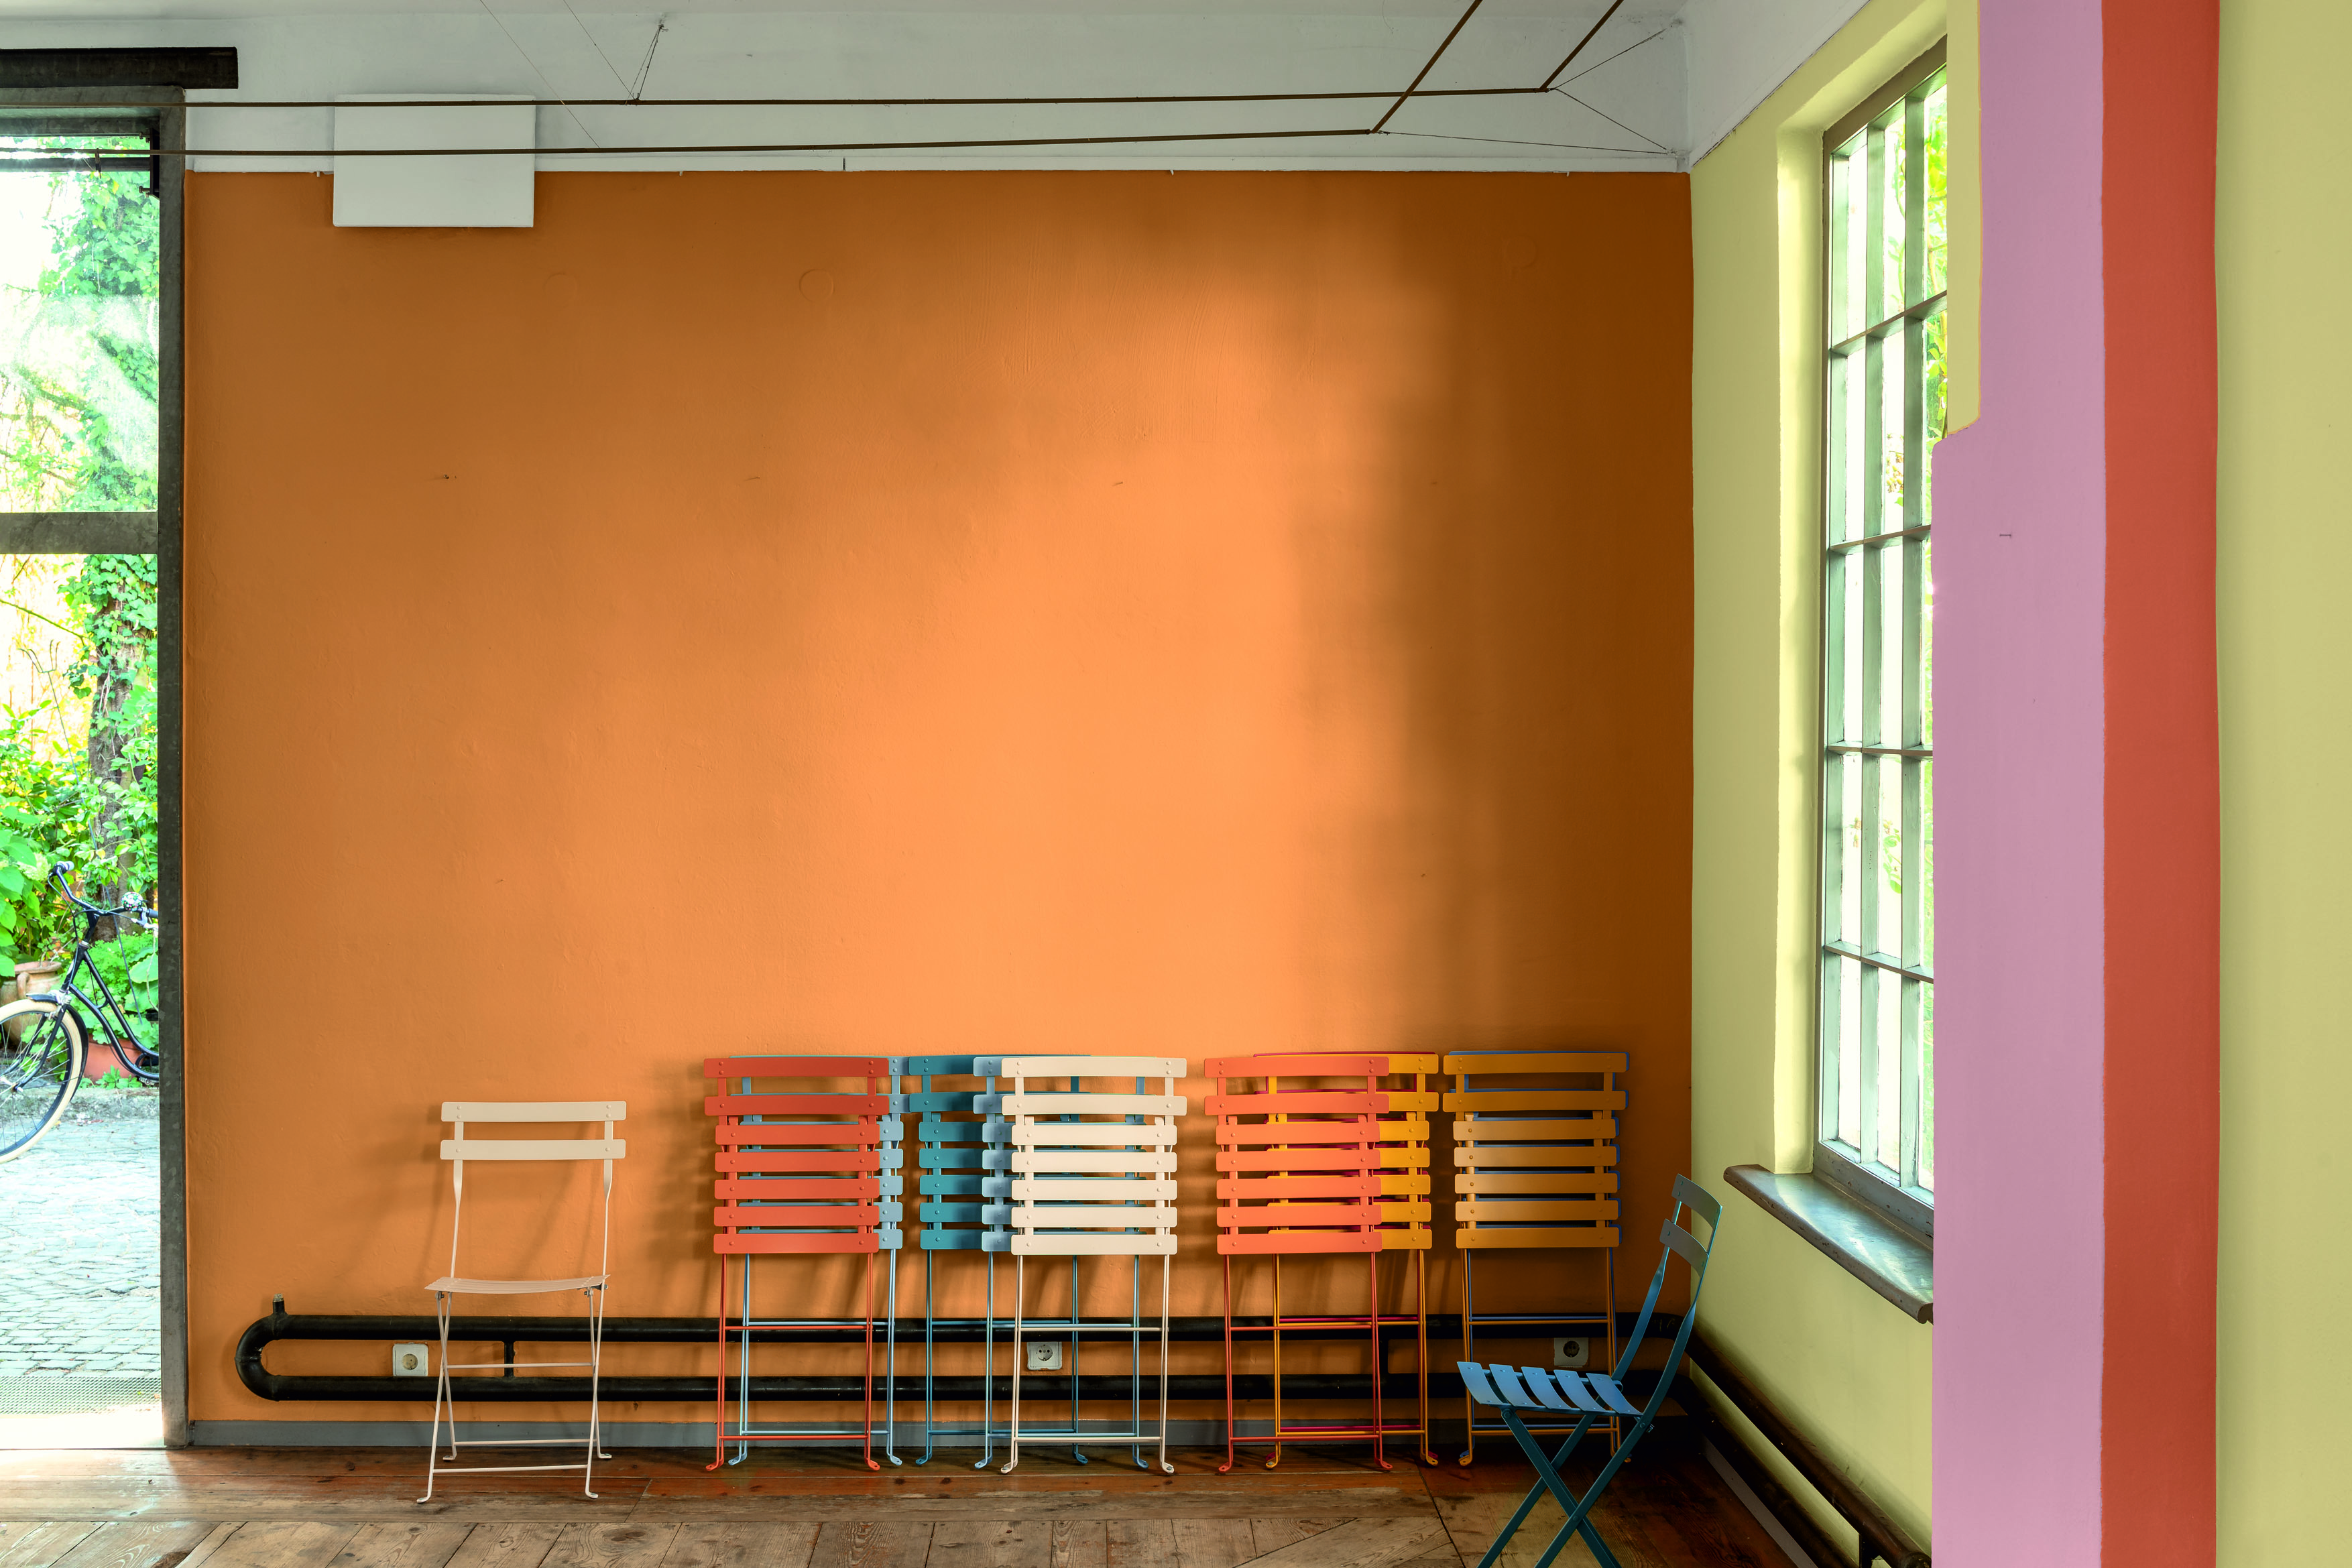 Klappbare Gartenstühle in verschiedenen Farben lehnen neben einem hohen Fesnter an einer Orange gestrichenen Wand.